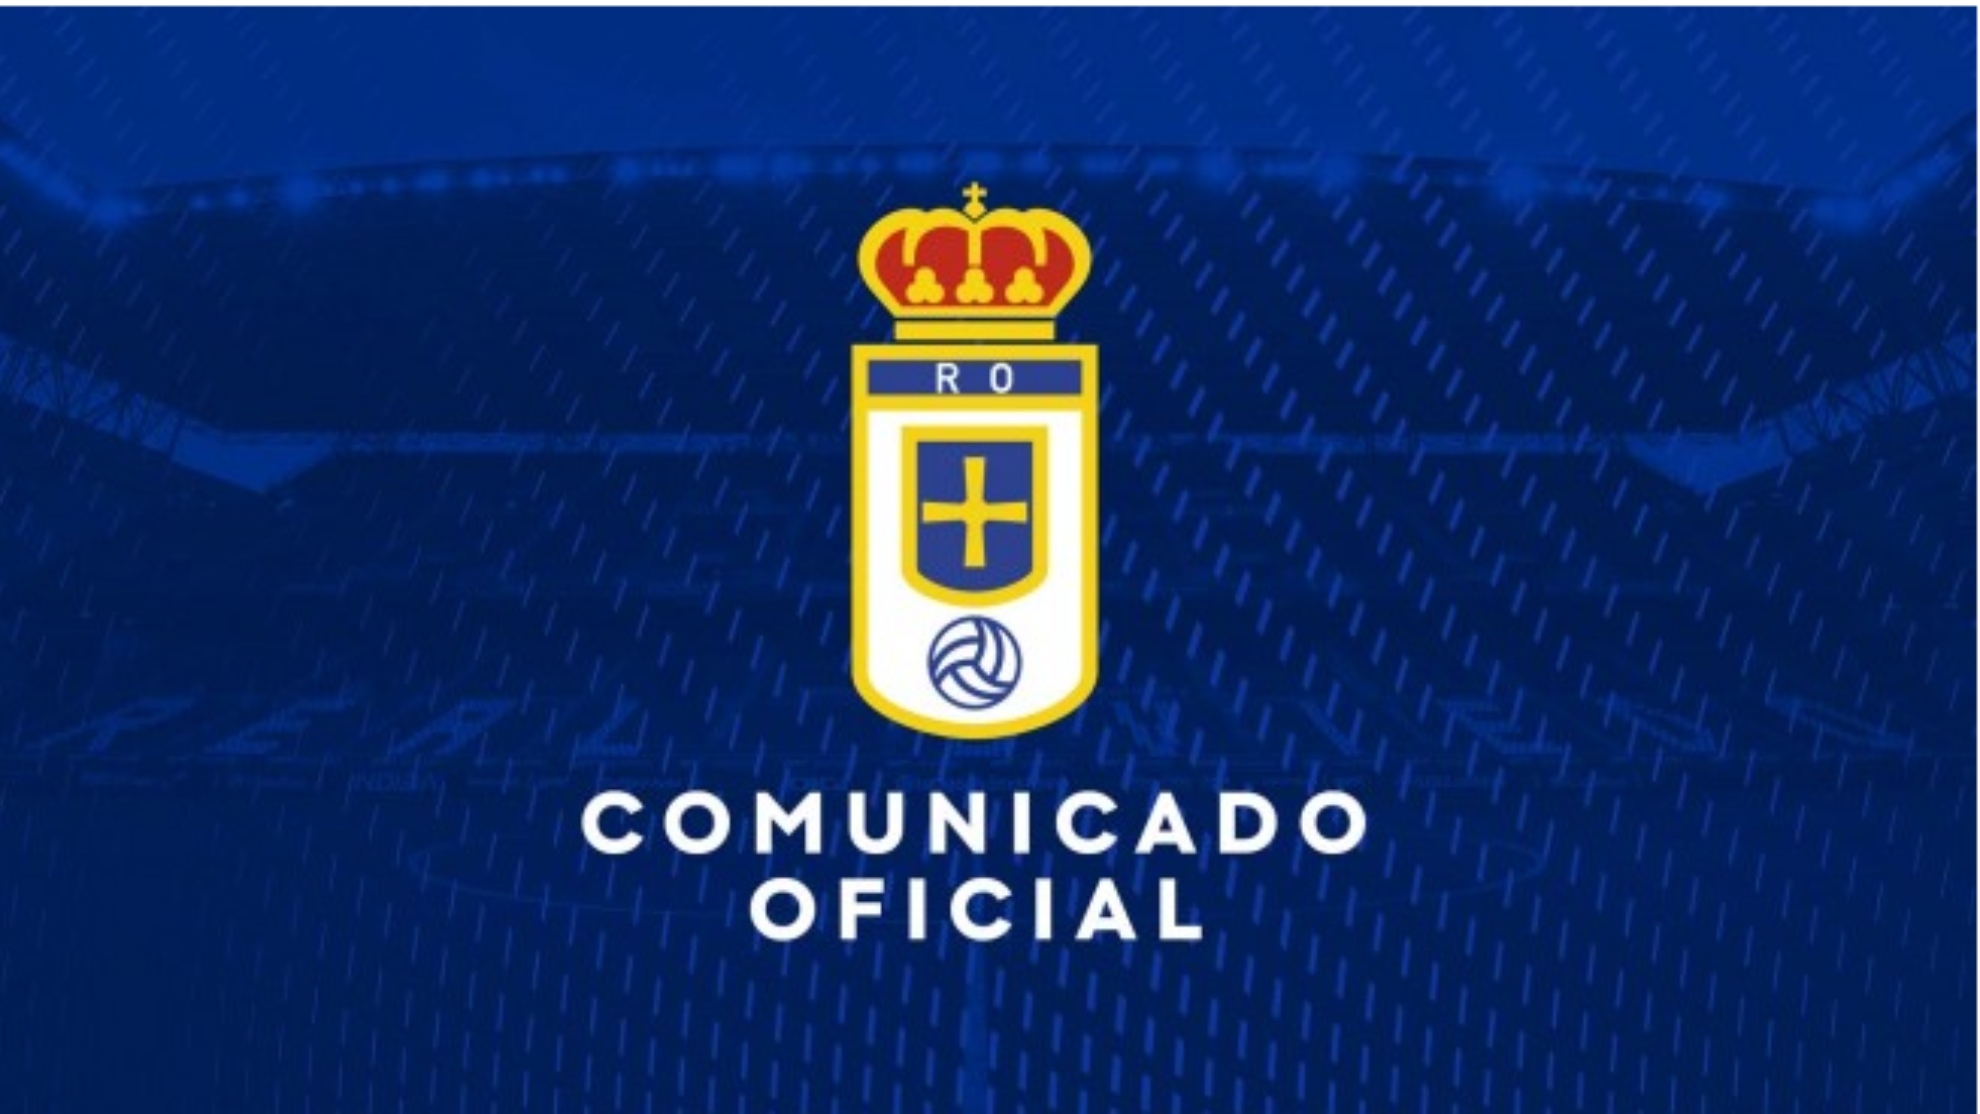 Cambio de manos: Carso vende el Real Oviedo al Grupo Pachuca